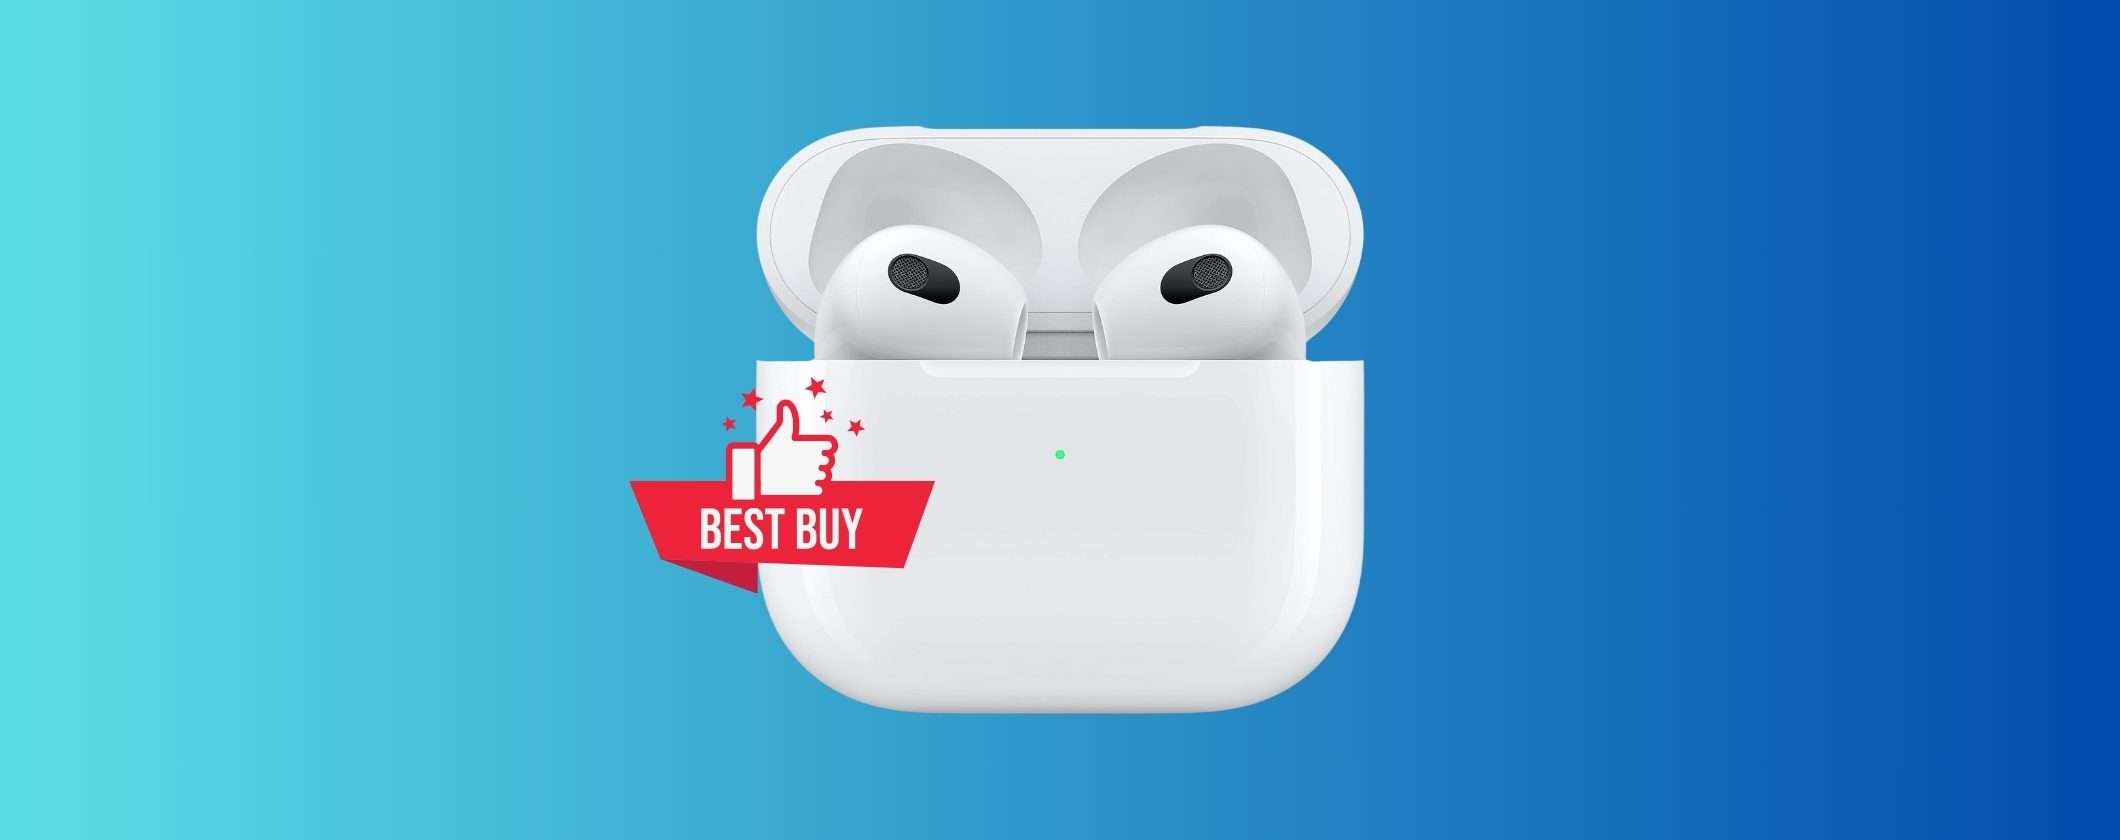 Apple AirPods 3: prezzo da BEST BUY su Amazon